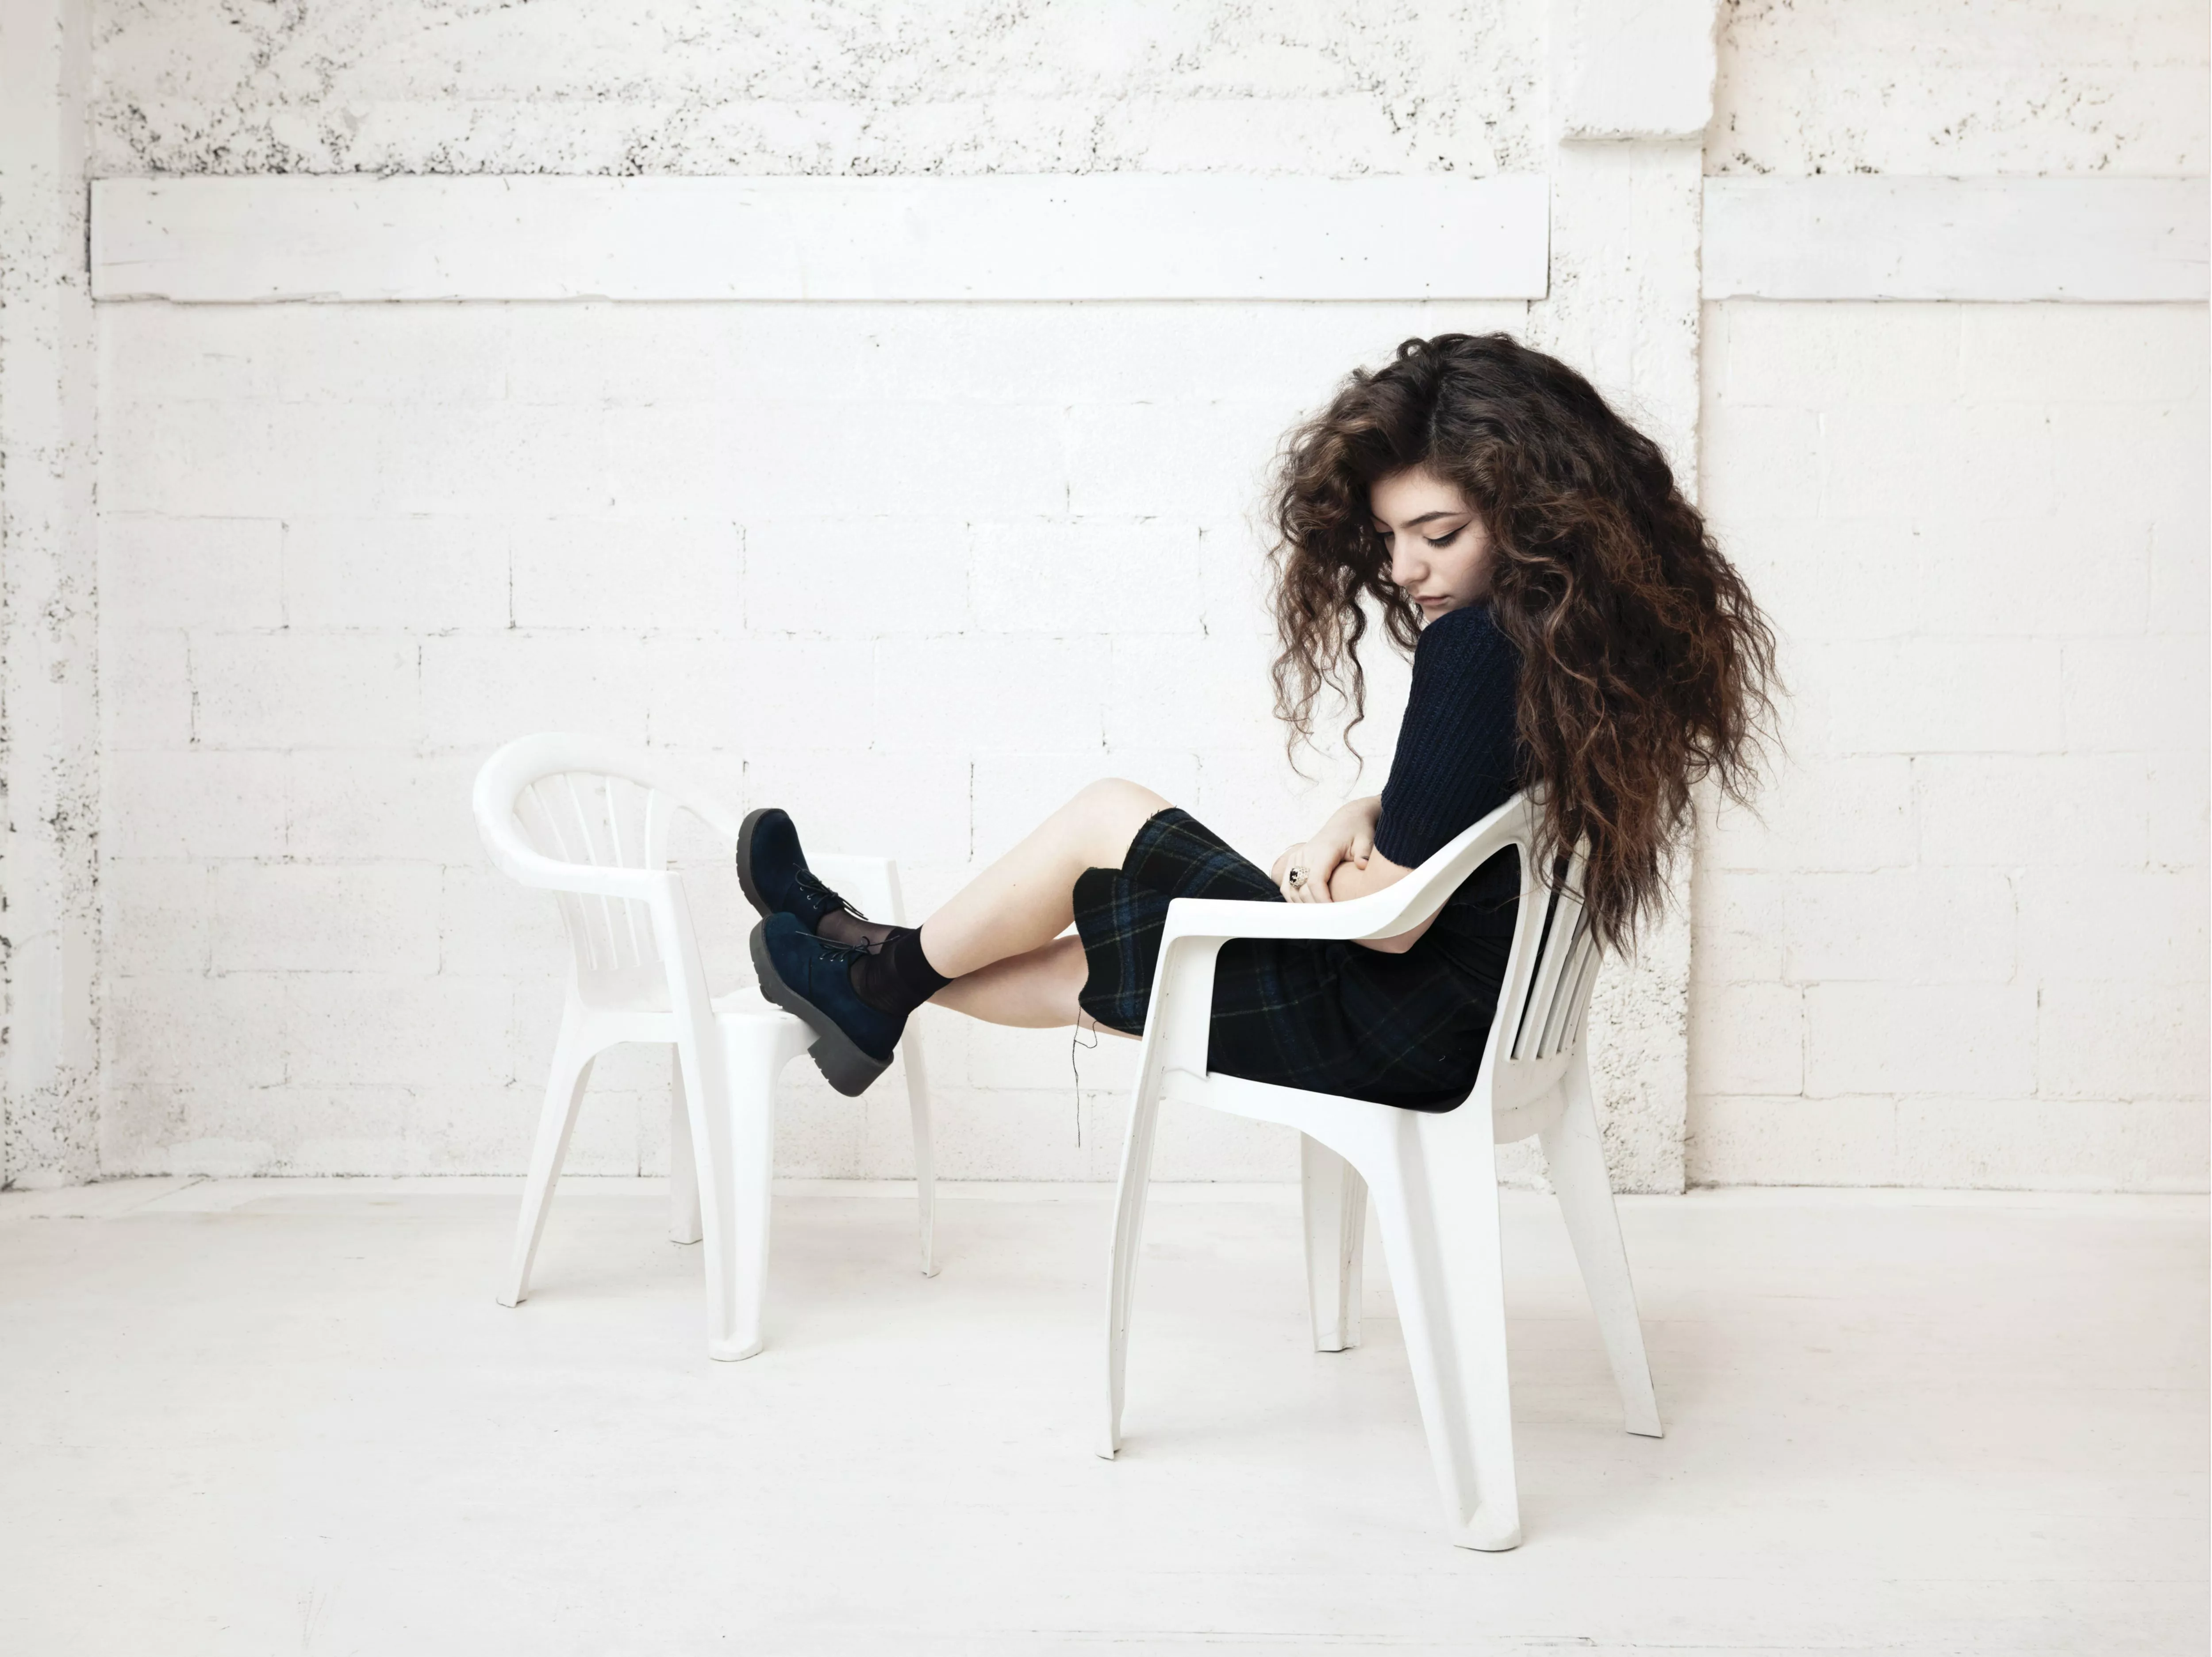 Spilleliste: Lorde deler sine utvalgte favorittlåter